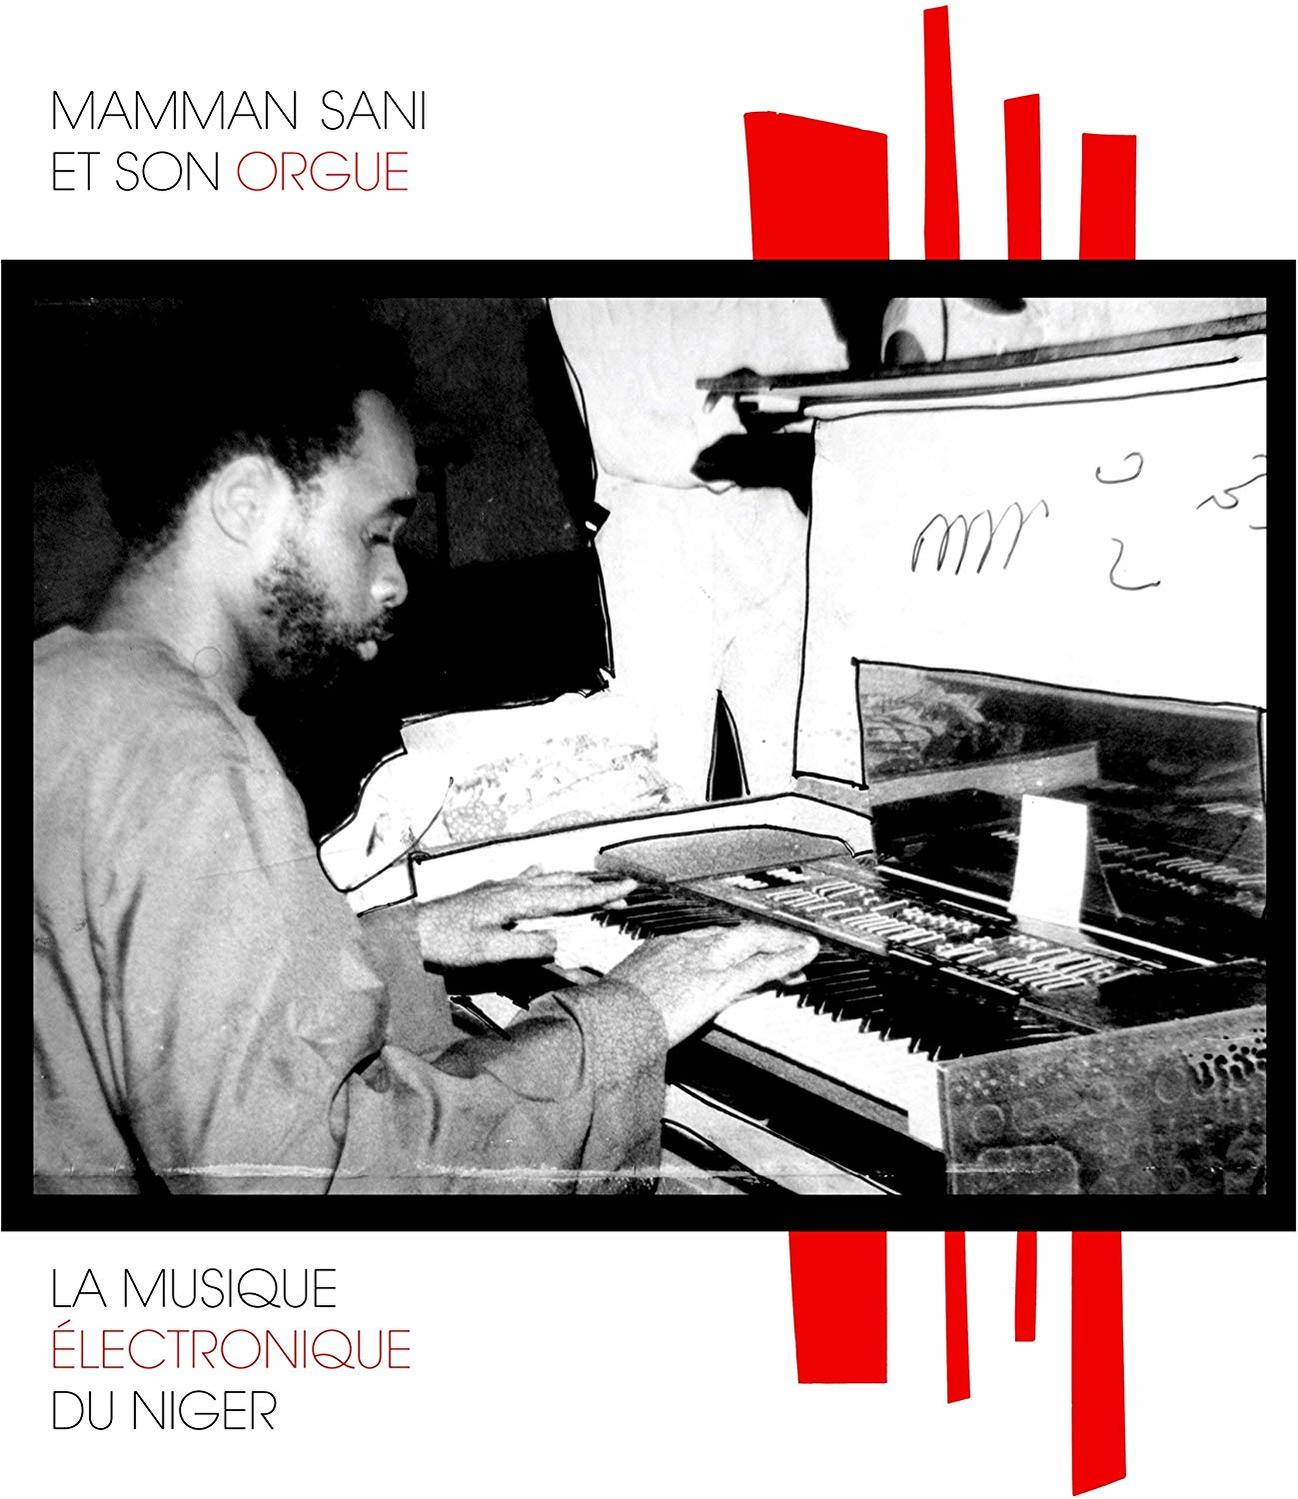 Mammane Sani - LA MUSIQUE (Vinyl) DU - ELECTRONIQUE NIGER